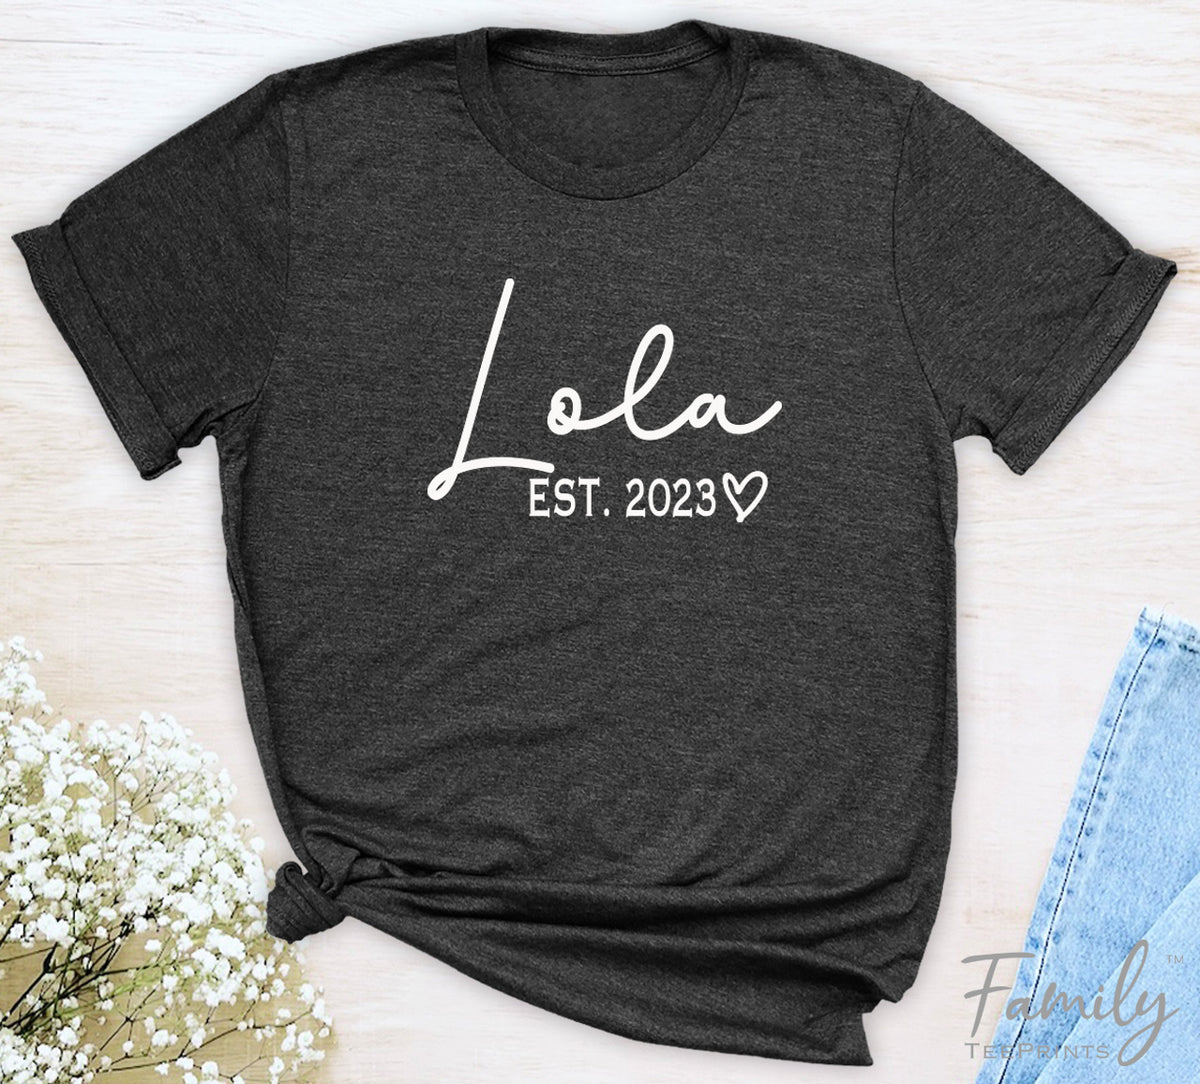 Lola Est. 2023 - Unisex T-shirt - Lola Shirt - Gift For Lola To Be